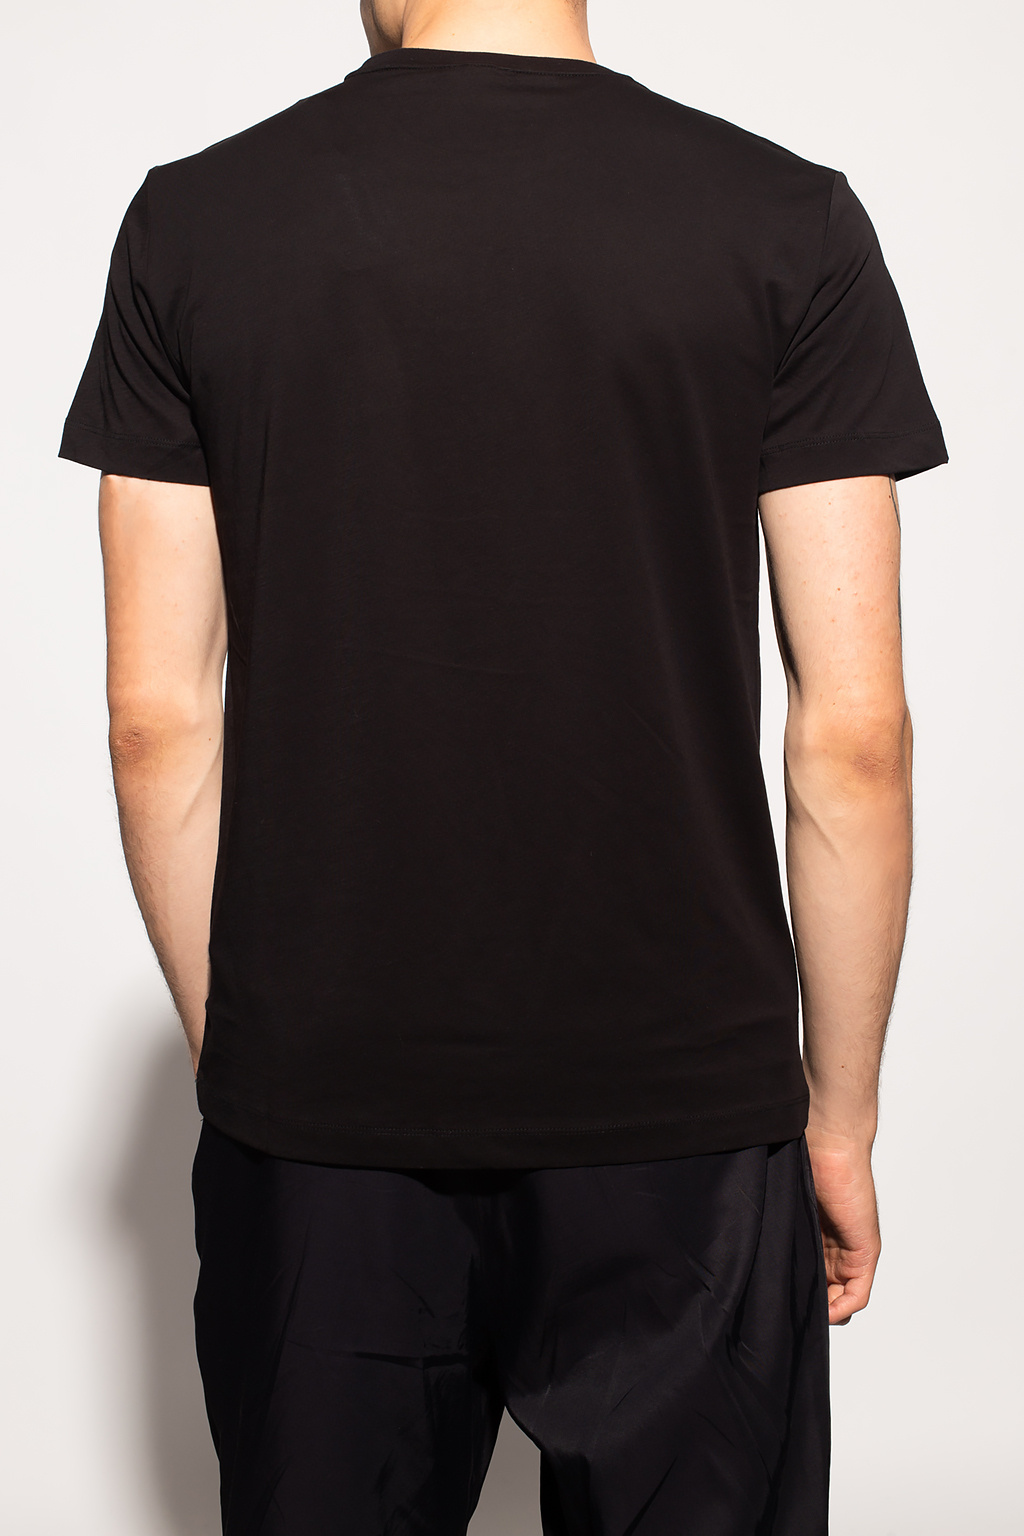 Giorgio armani Print pleated-bib formal shirt Logo T-shirt